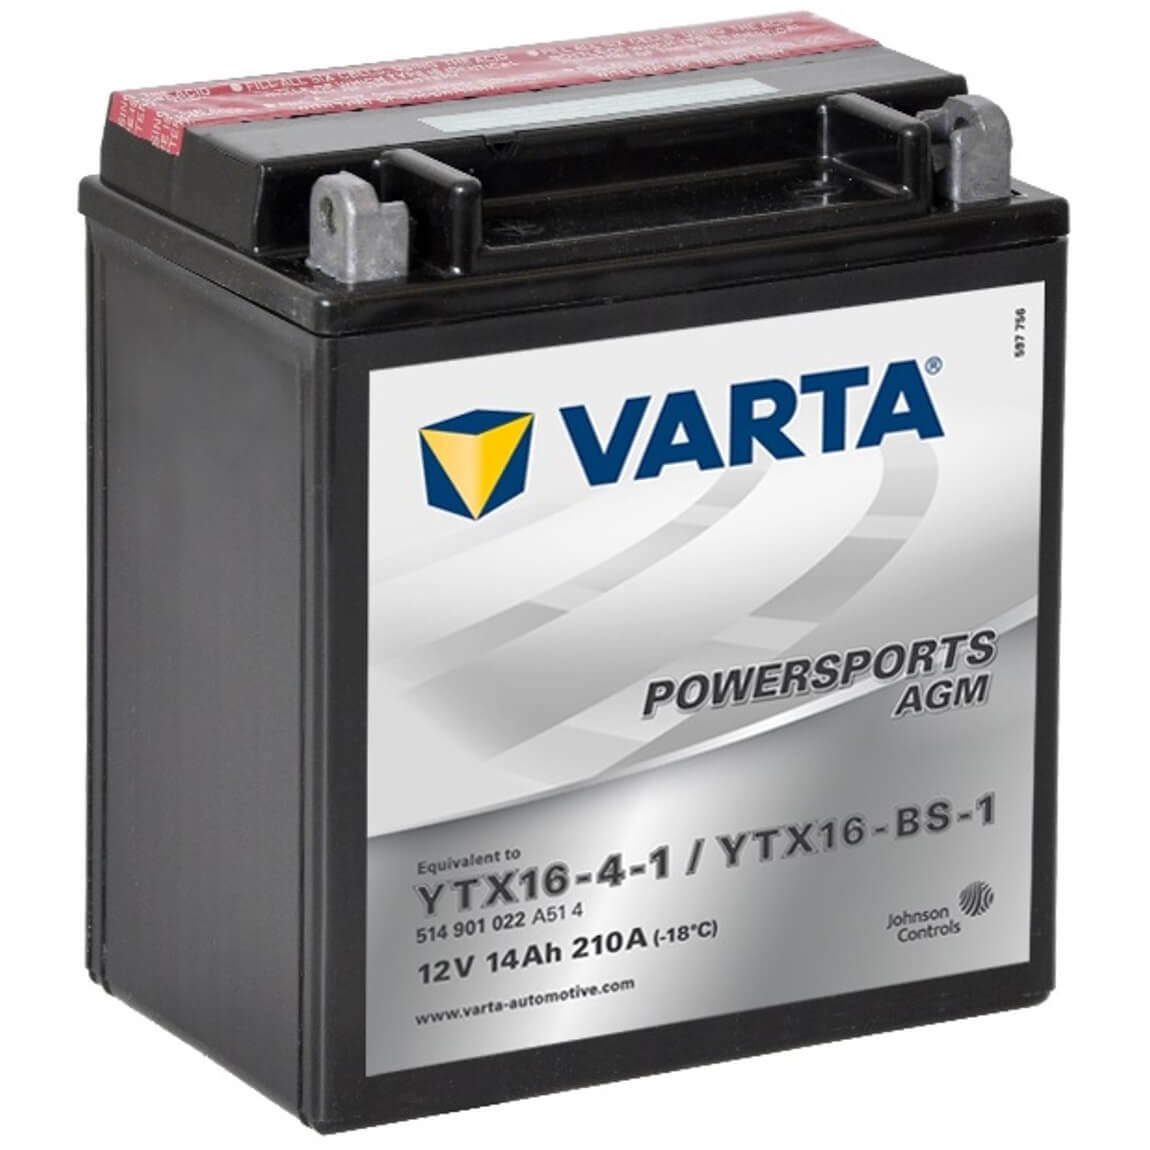 Varta Powersports 514901 AGM 12V 14Ah 210A